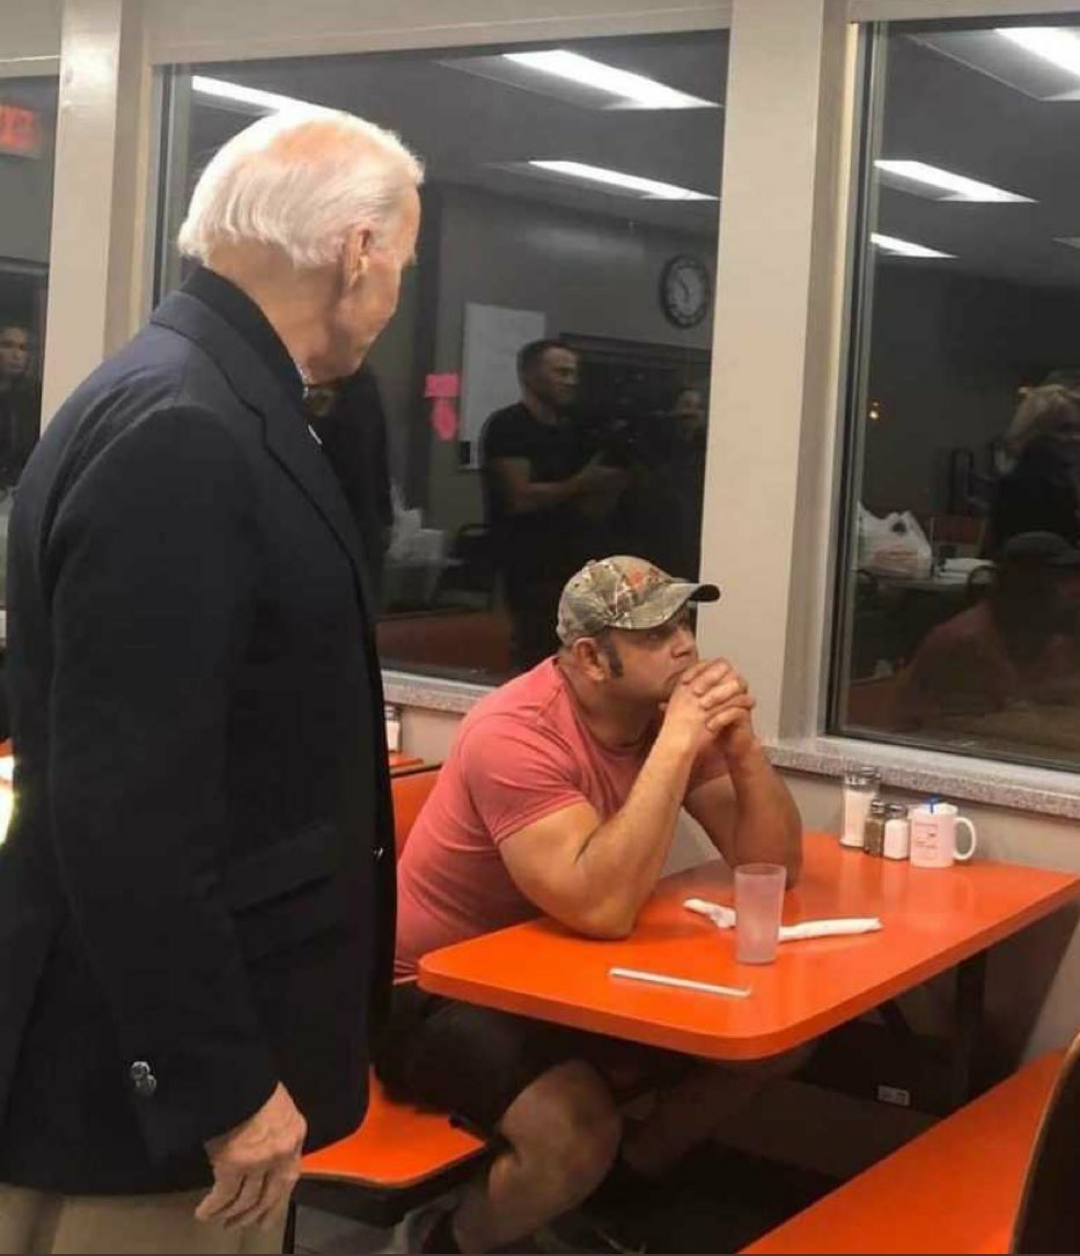 High Quality Diner guy ignoring Biden Blank Meme Template